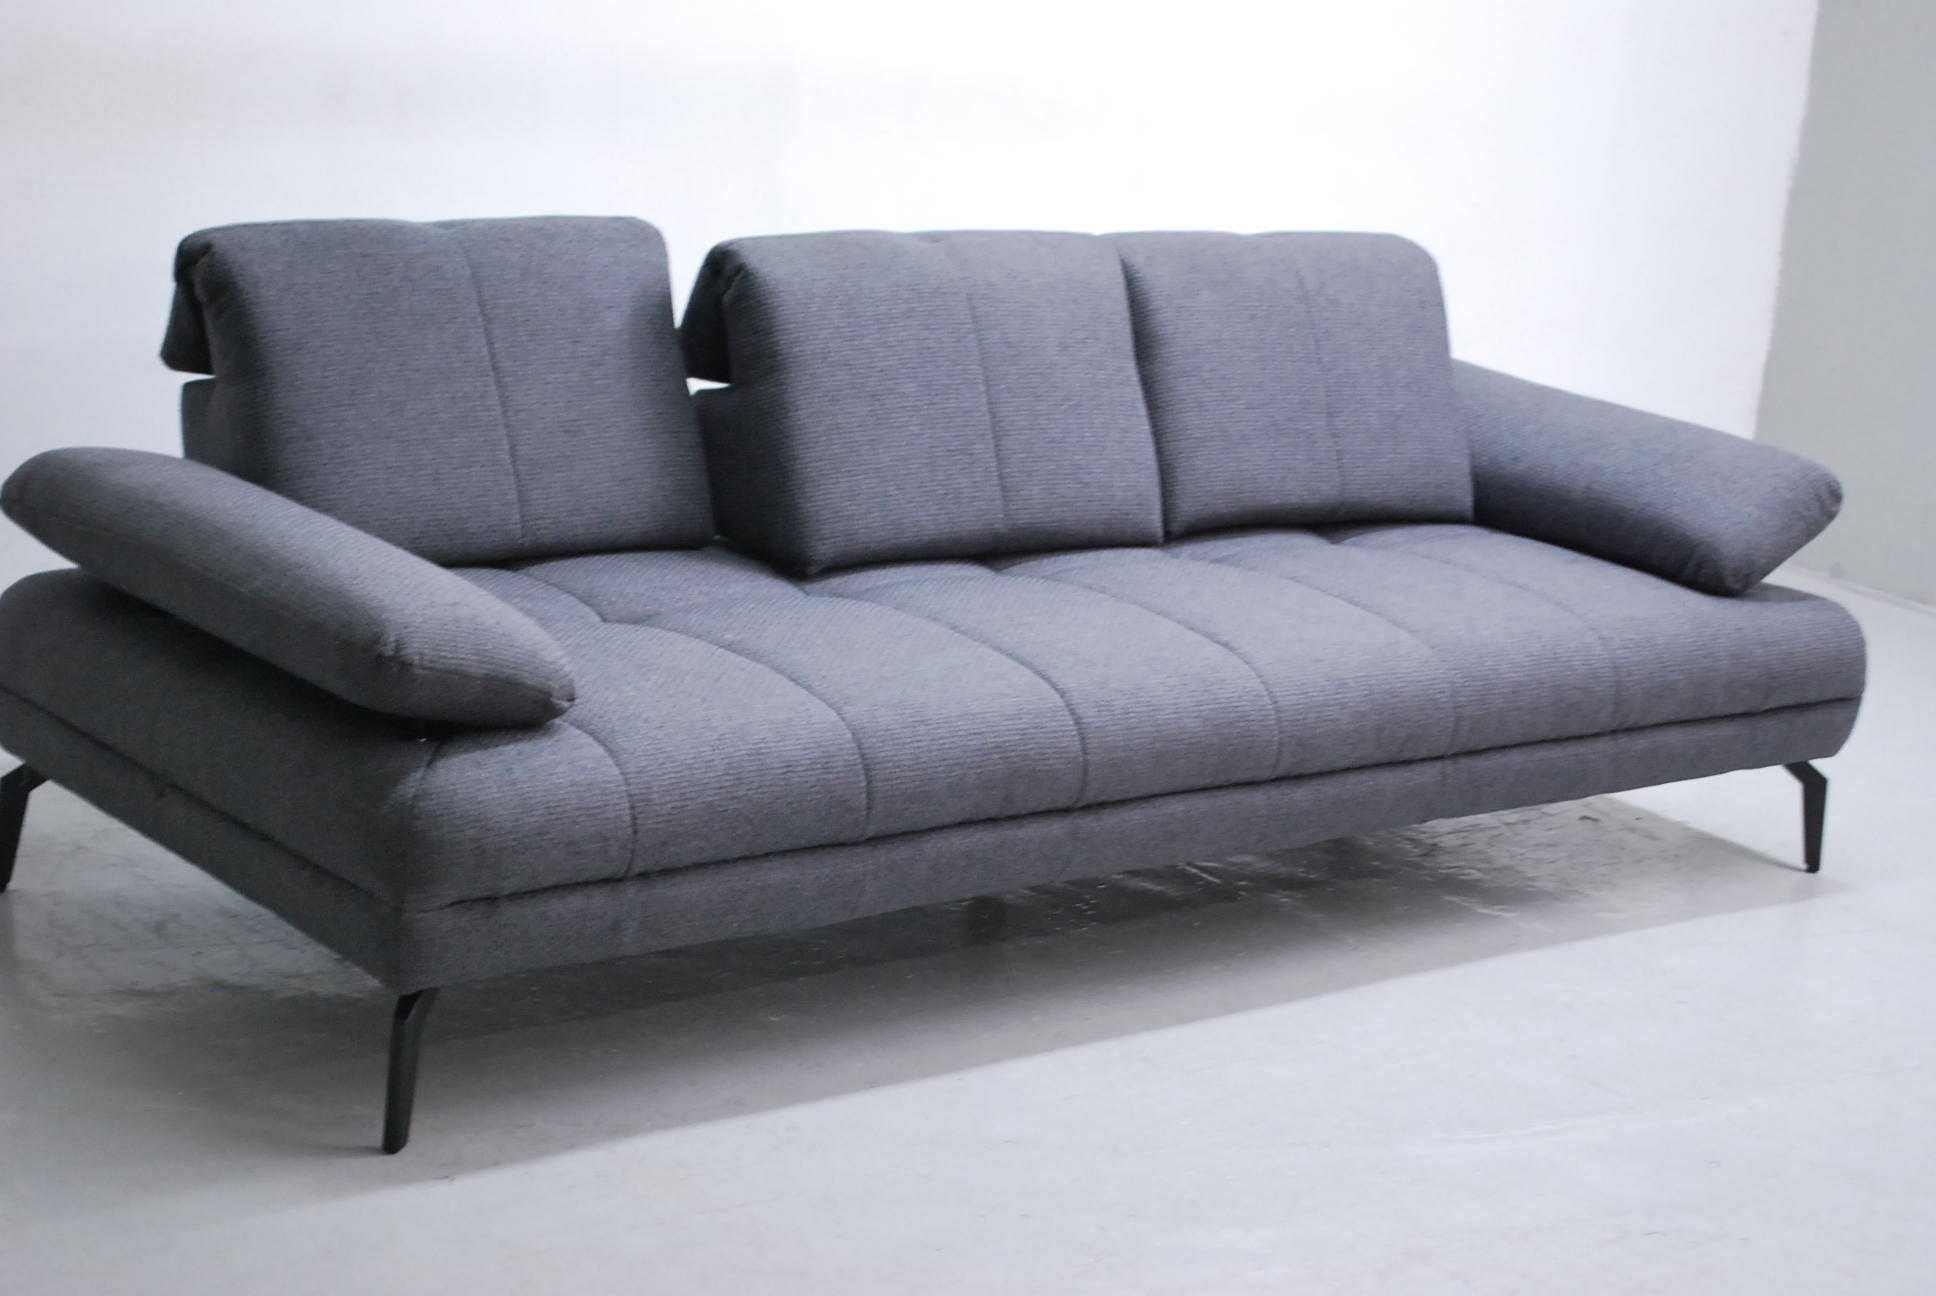 RZP nowa nowoczesna sofa 3 osobowa KANAPA popielata tkanina oparcie r